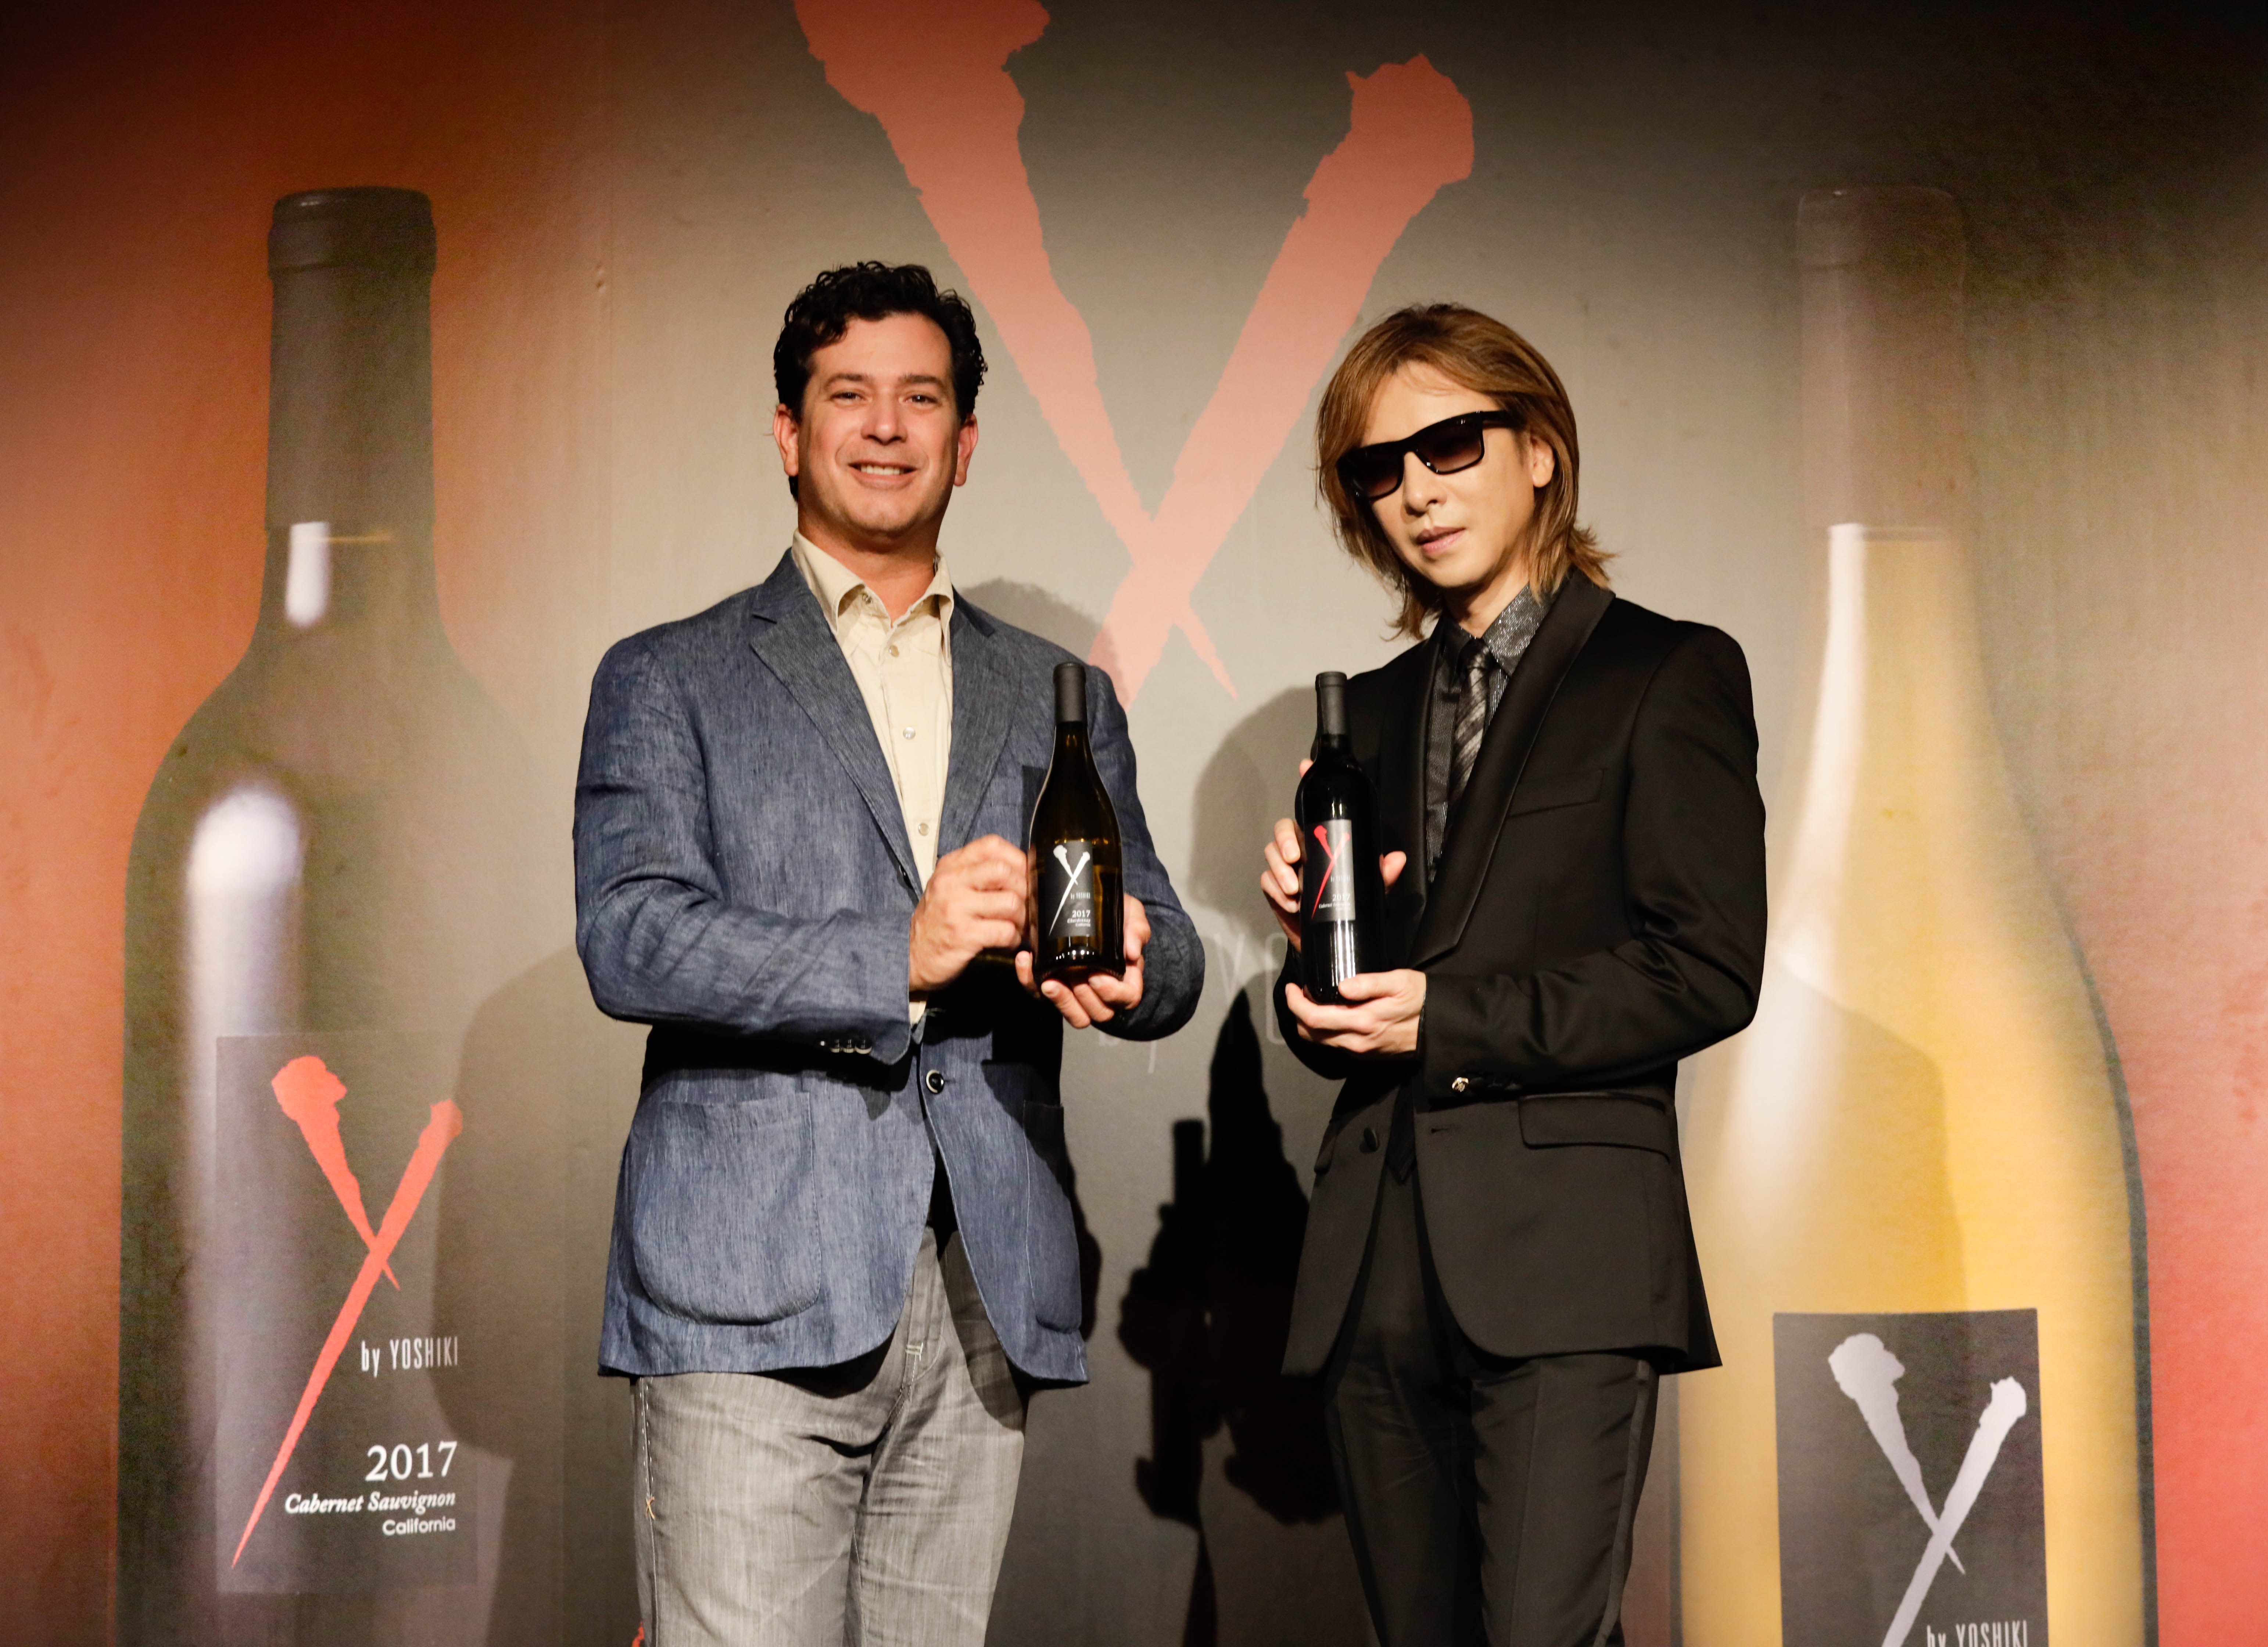 幻のyoshikiワイン Y By Yoshiki の新作ワインが完成 Yoshikiも 自分でも感動した と評する自信作 Yoshiki Pr事務局のプレスリリース